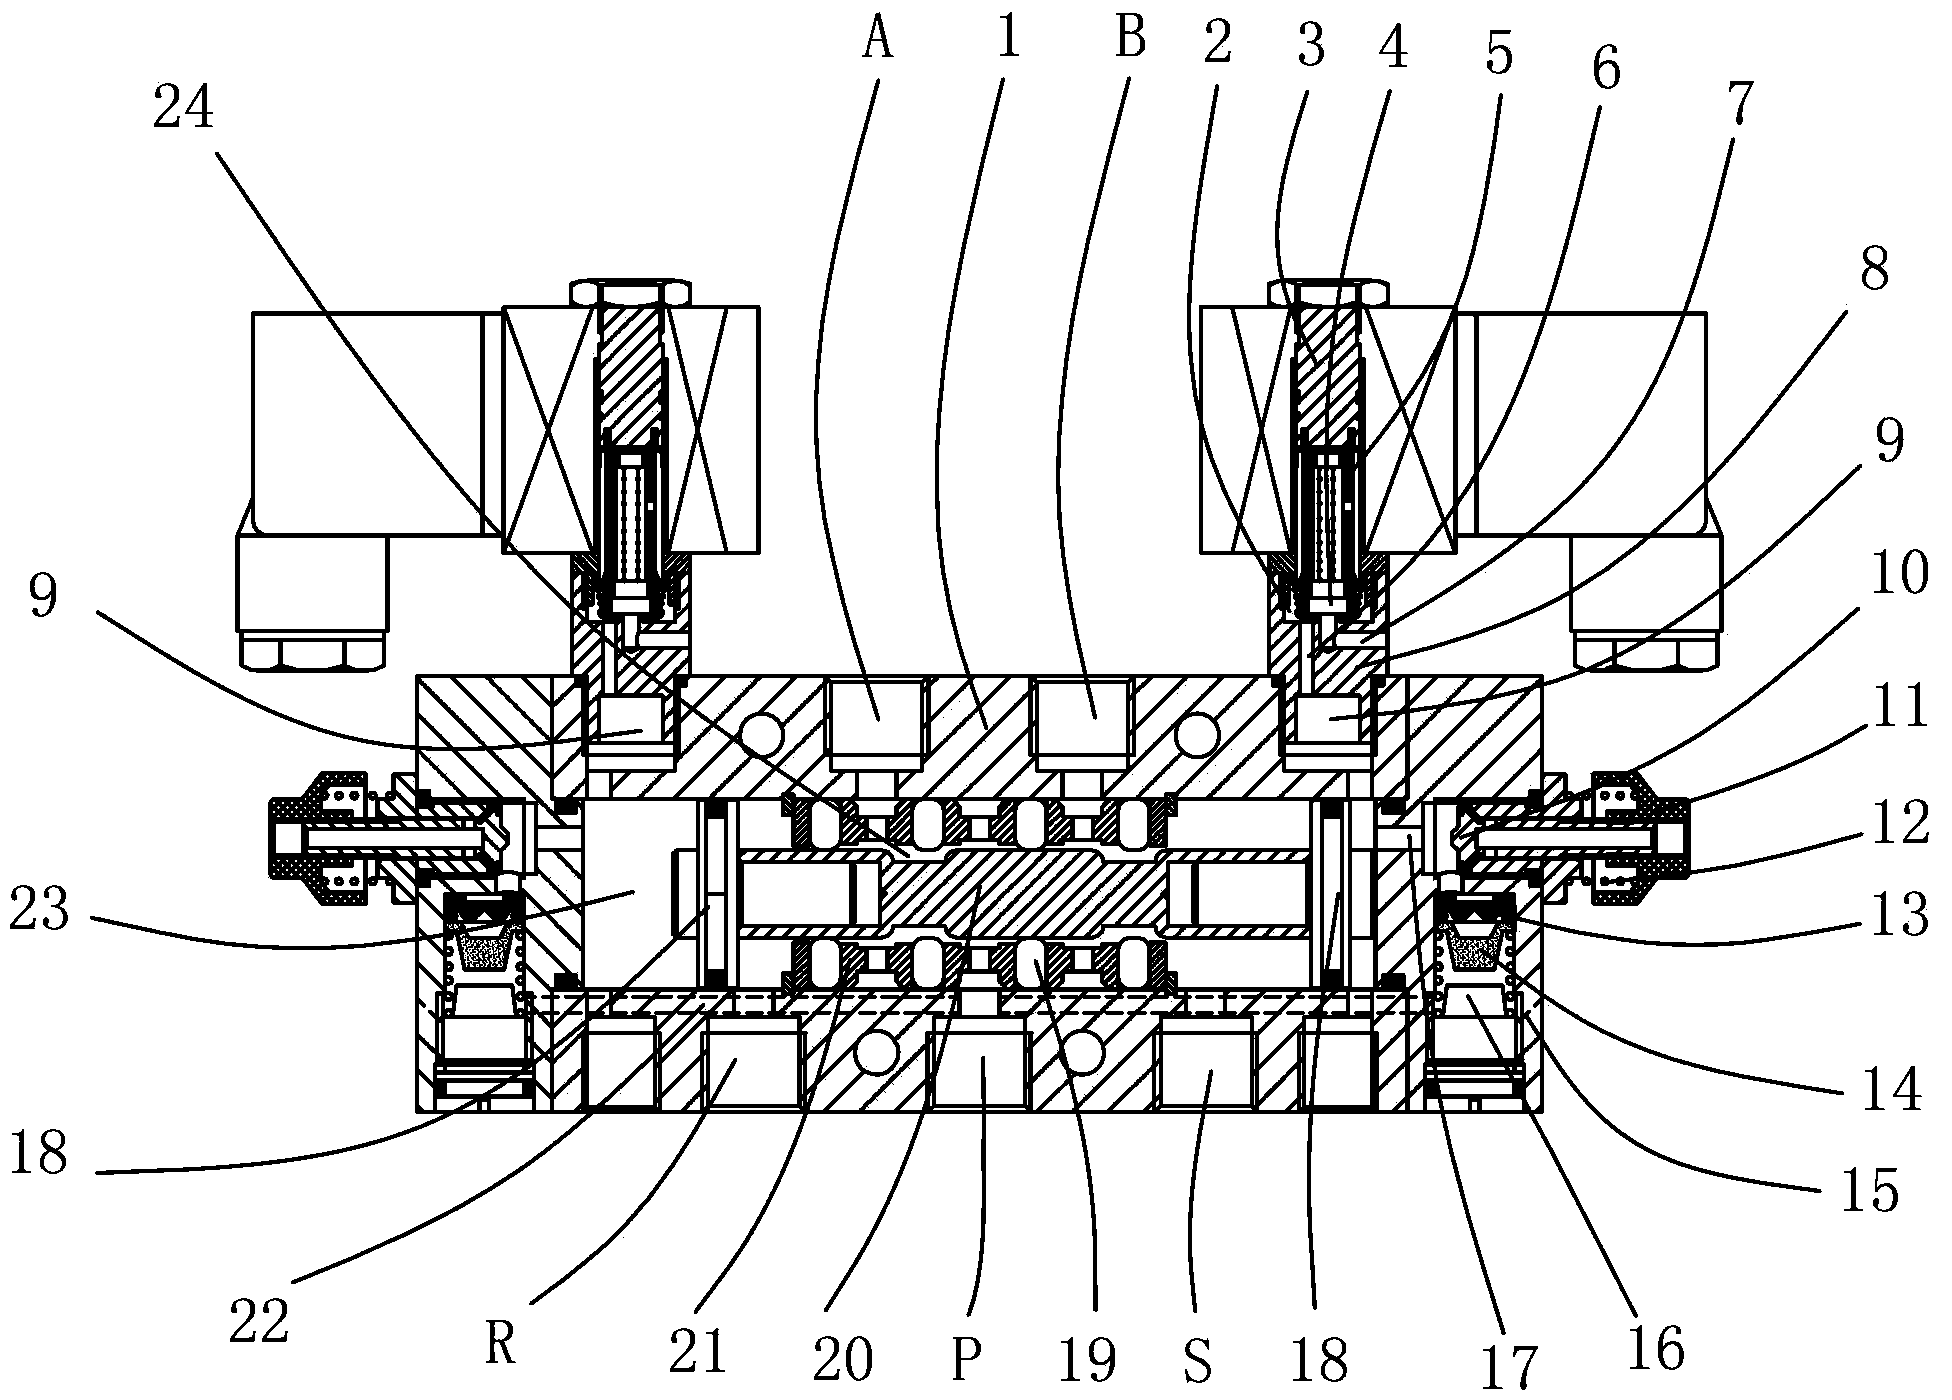 Symmetric two-position five-way valve